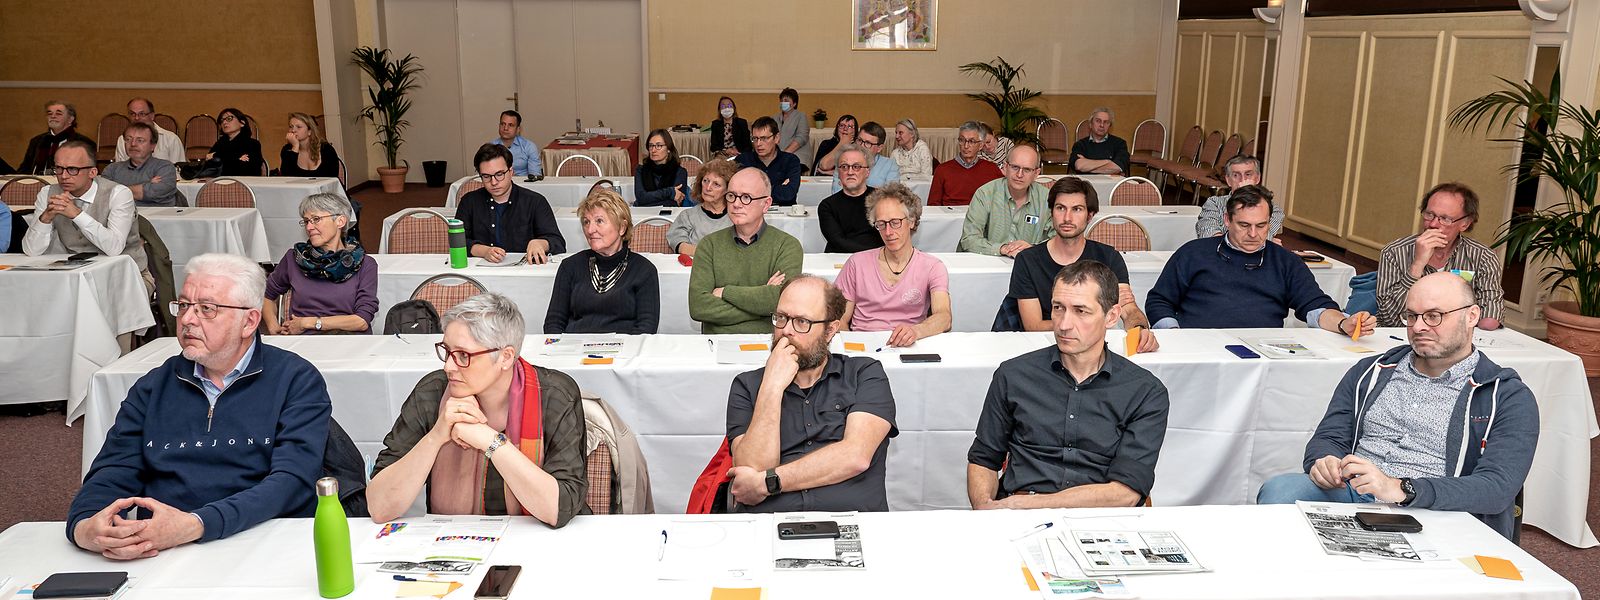 Am Samstag fand im Konferenzzentrum des Hotel Parc Belle-Vue in Luxemburg-Stadt die diesjährige Generalversammlung des "Mouvement Ecologique" statt.